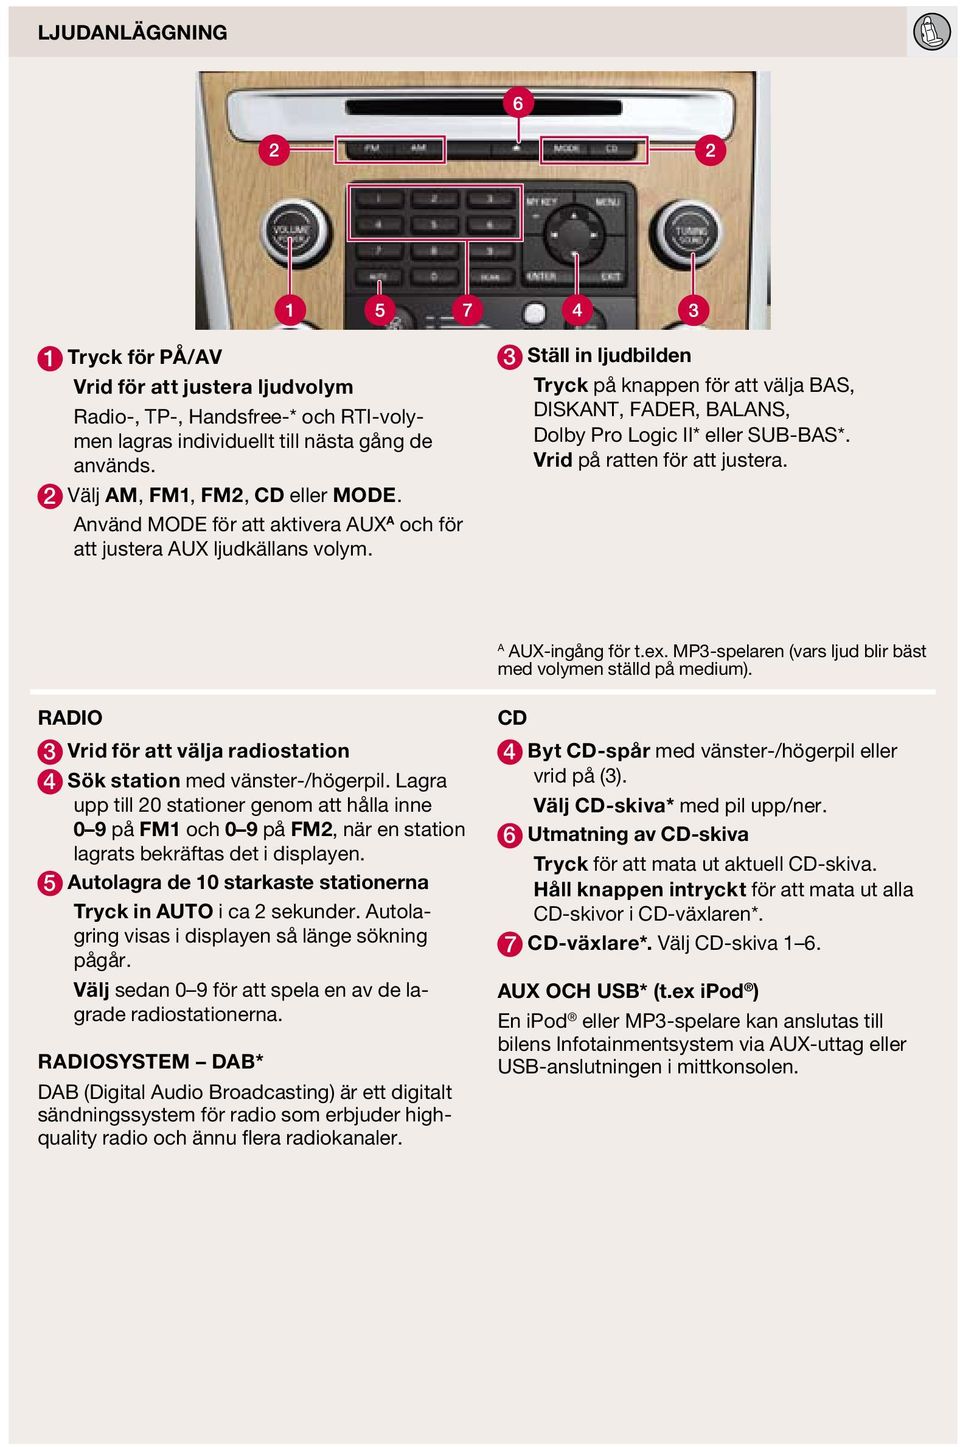 Vrid på ratten för att justera. A AUX-ingång för t.ex. MP3-spelaren (vars ljud blir bäst med volymen ställd på medium). RADIO 3 Vrid för att välja radiostation 4 Sök station med vänster-/högerpil.